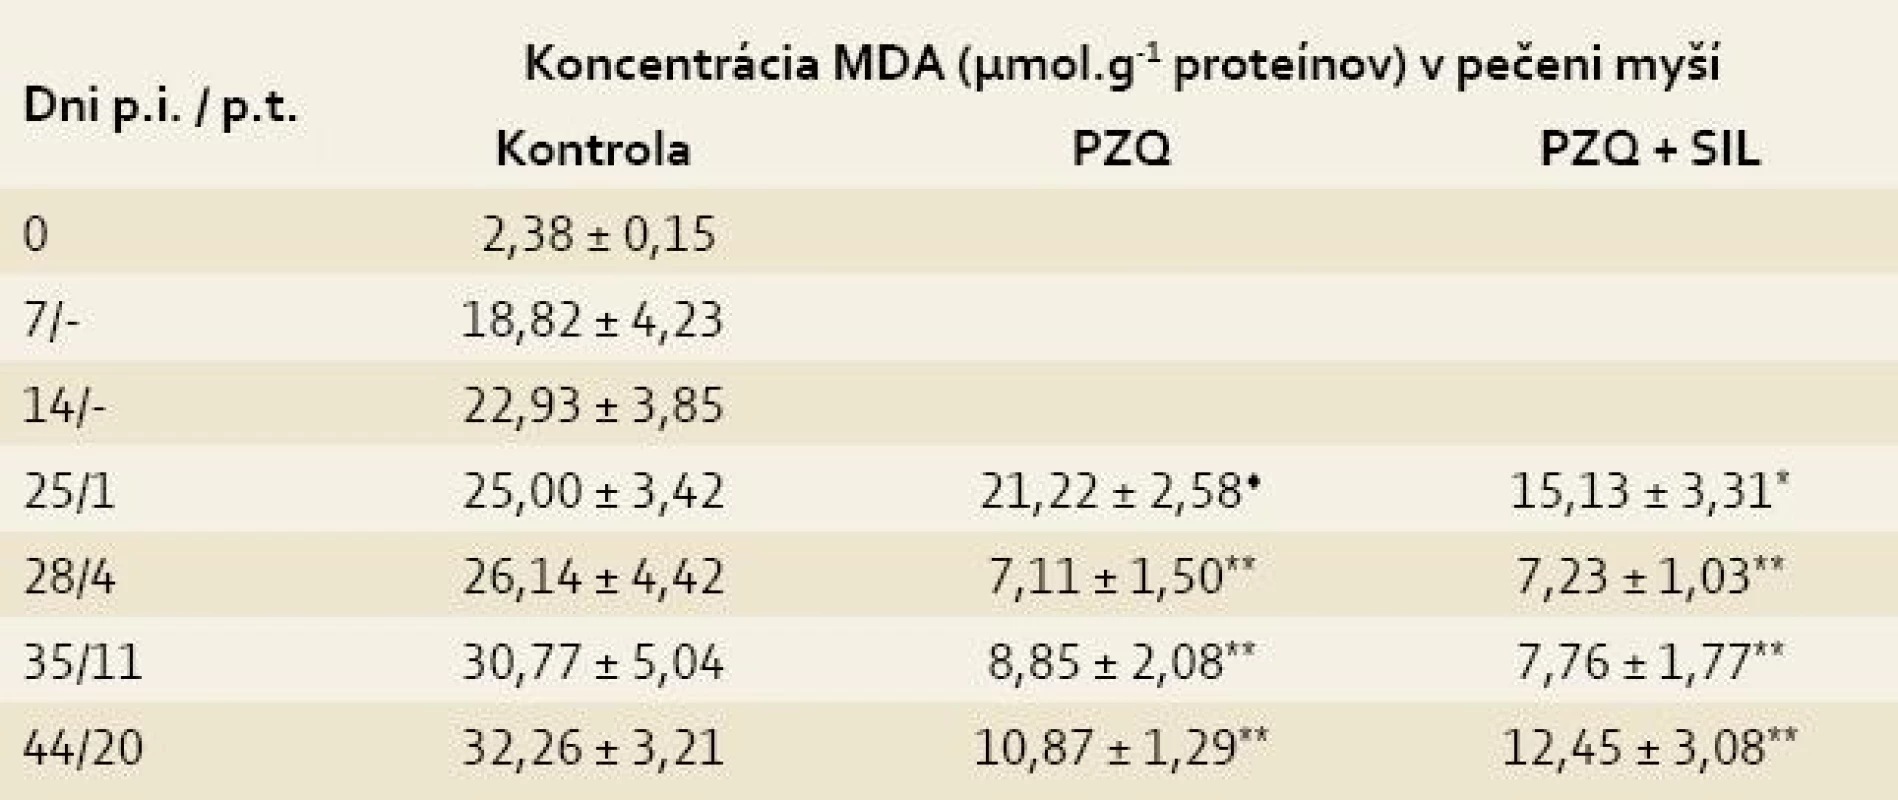 Koncentrácia malóndialdehydu (MDA) v pečeniach myší infikovaných larvami <i>Mesocestoides vogae</i>, neliečených a liečených praziquantelom (PZQ) samotným alebo v kombinácii so silymarínom (SIL).<br>
Tab. 2. Concentration of malondialdehyde (MDA) in the livers of mice infected with <i>Mesocestoides vogae</i> larvae, untreated and treated with praziquantel (PZQ) alone and in combination with silymarin (SIL).